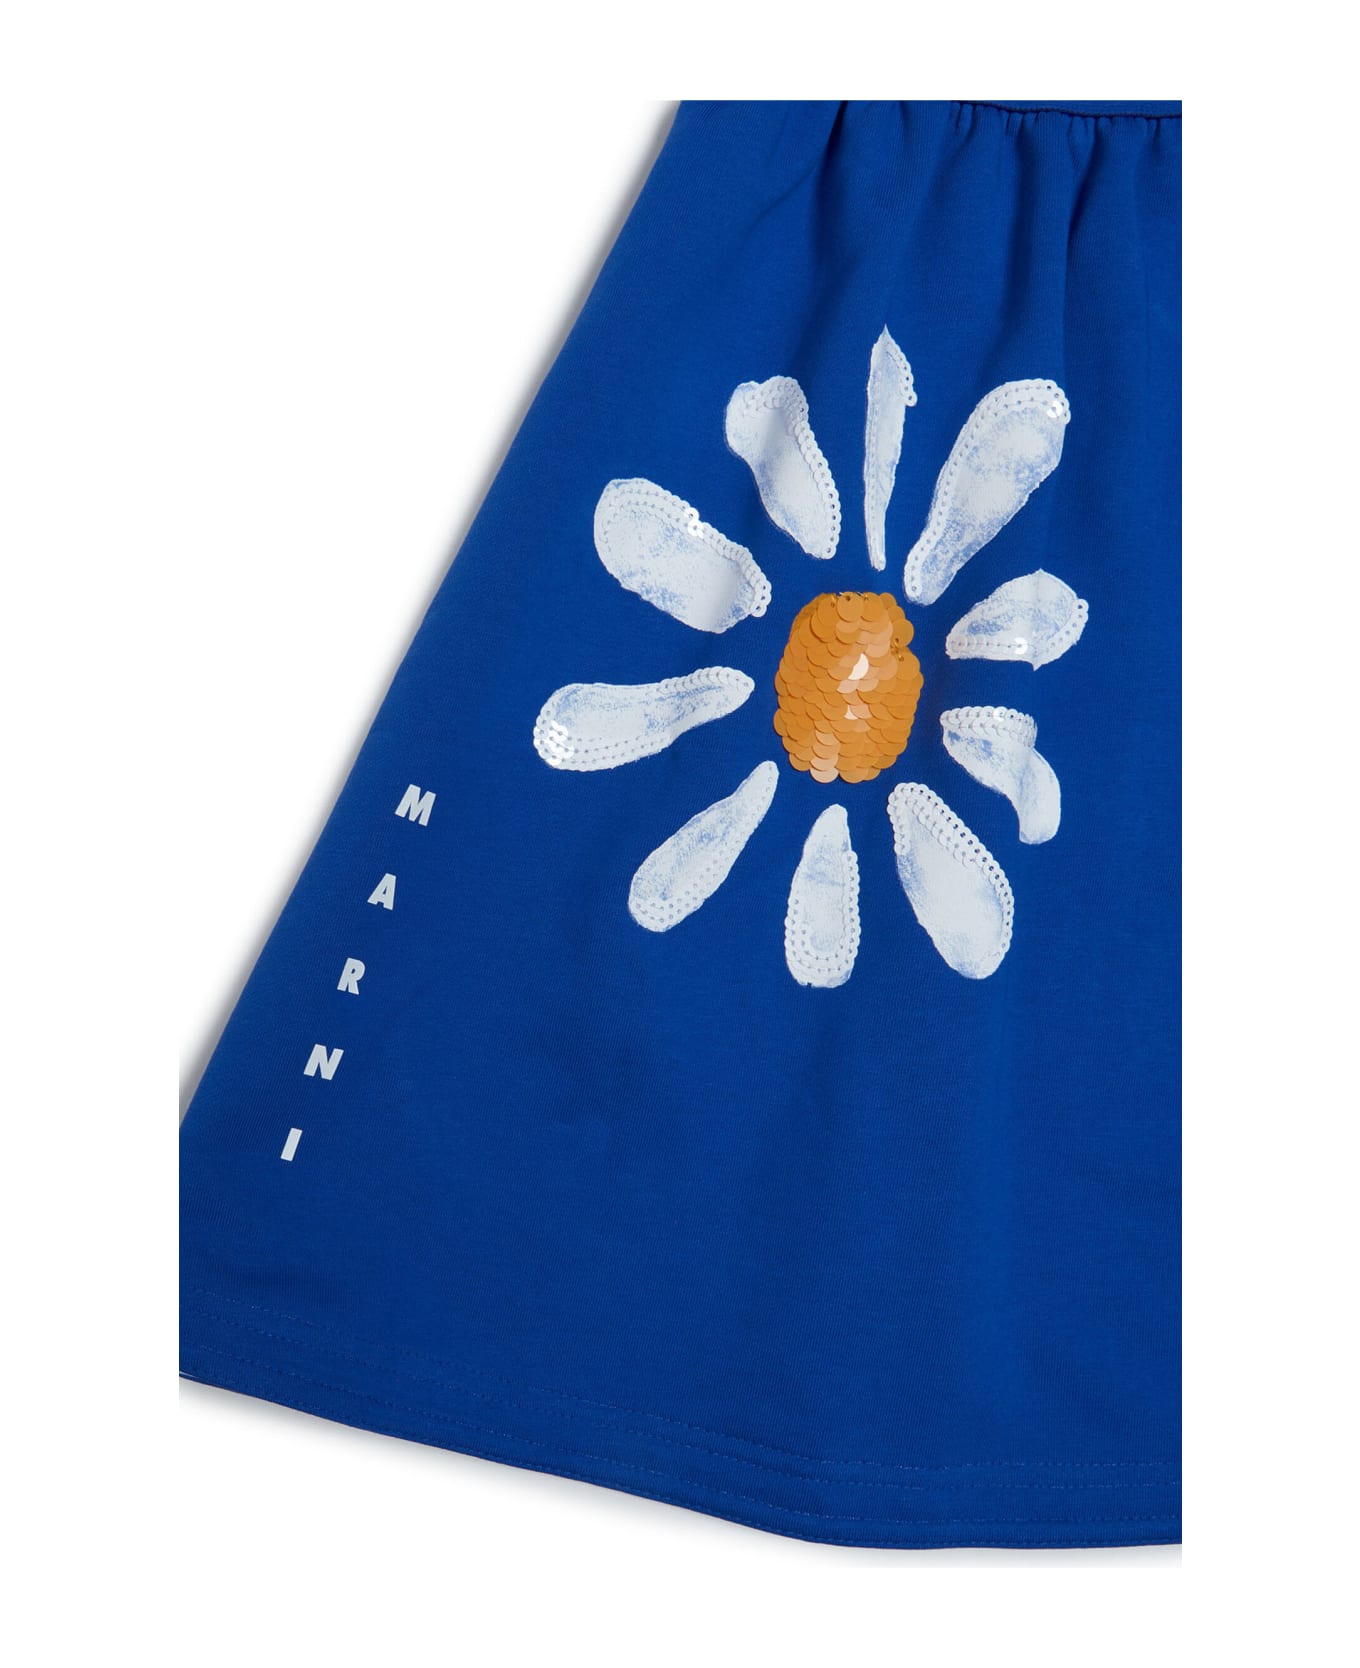 Marni Mg112f Skirt Marni Blue Plush Skirt With Daisy Pattern - Marni S S Organic Jersey Tee Lily White